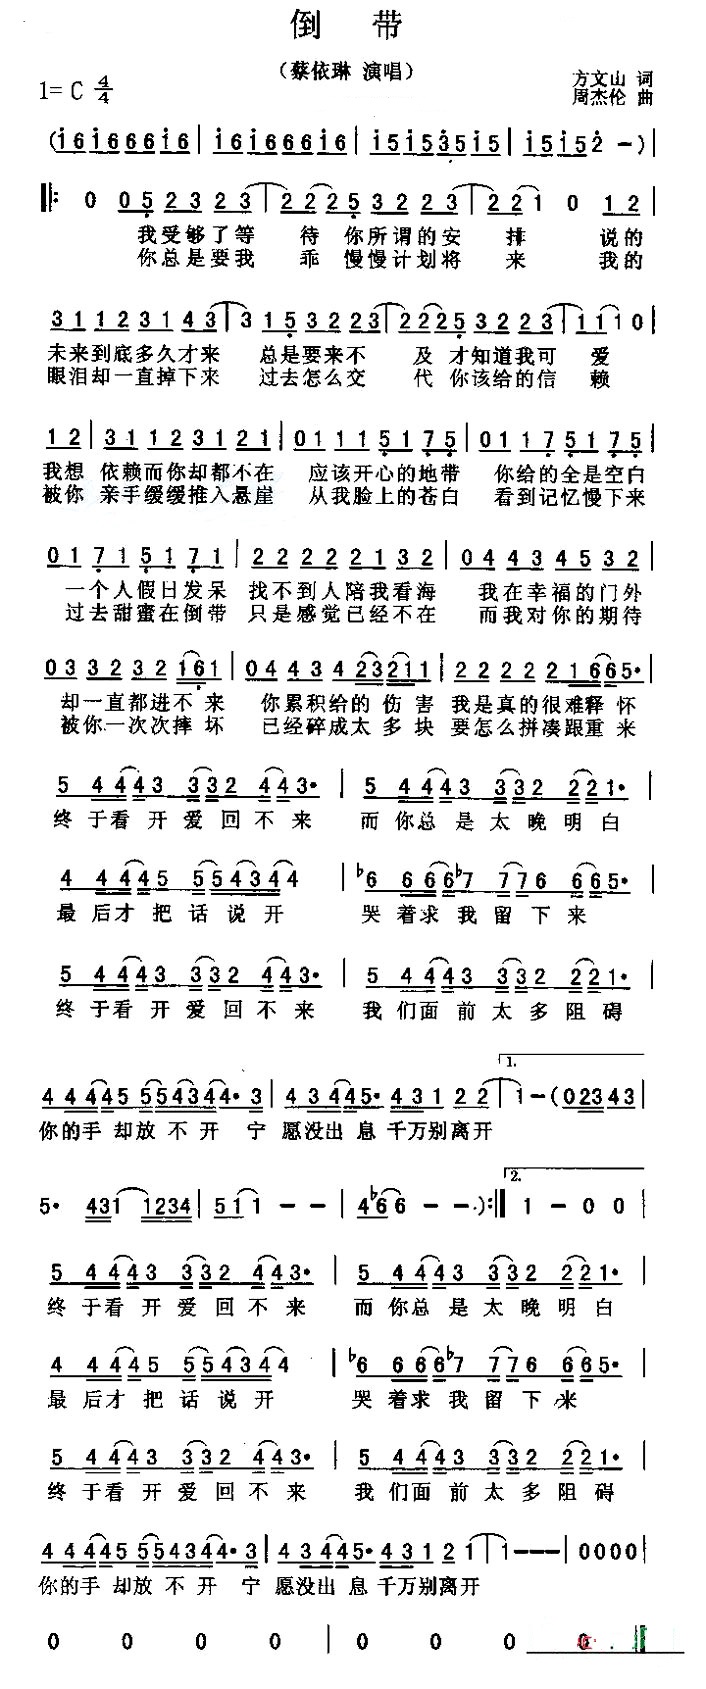 【倒带】的简谱乐谱及歌词 – 蔡依林 (Jolin Tsai)